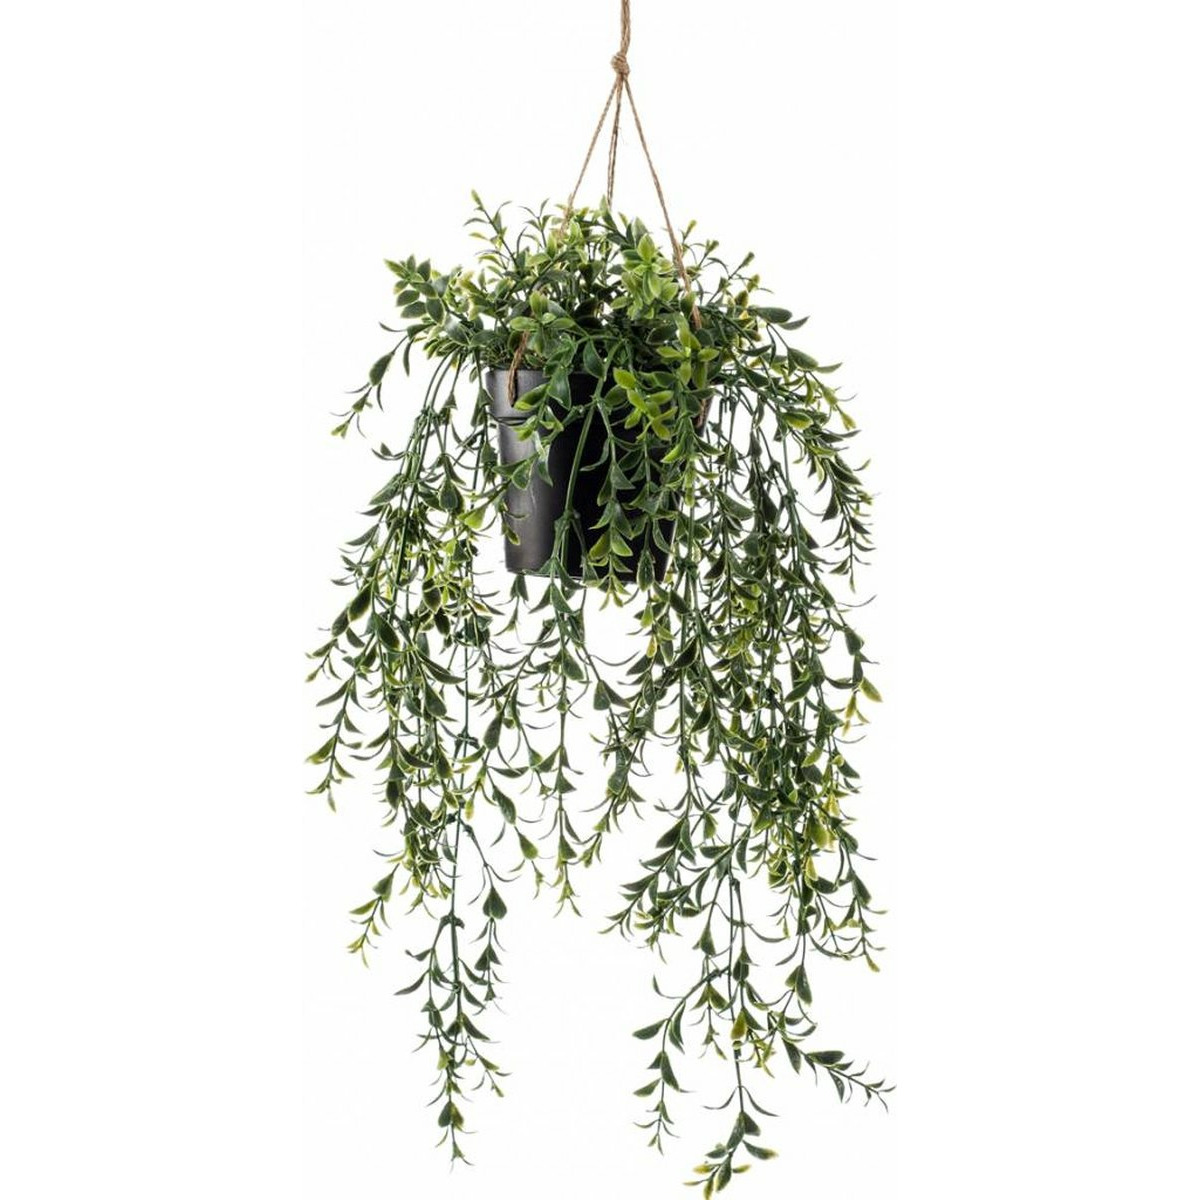 Emerald kunstplant-hangplant Buxus groen 50 cm lang